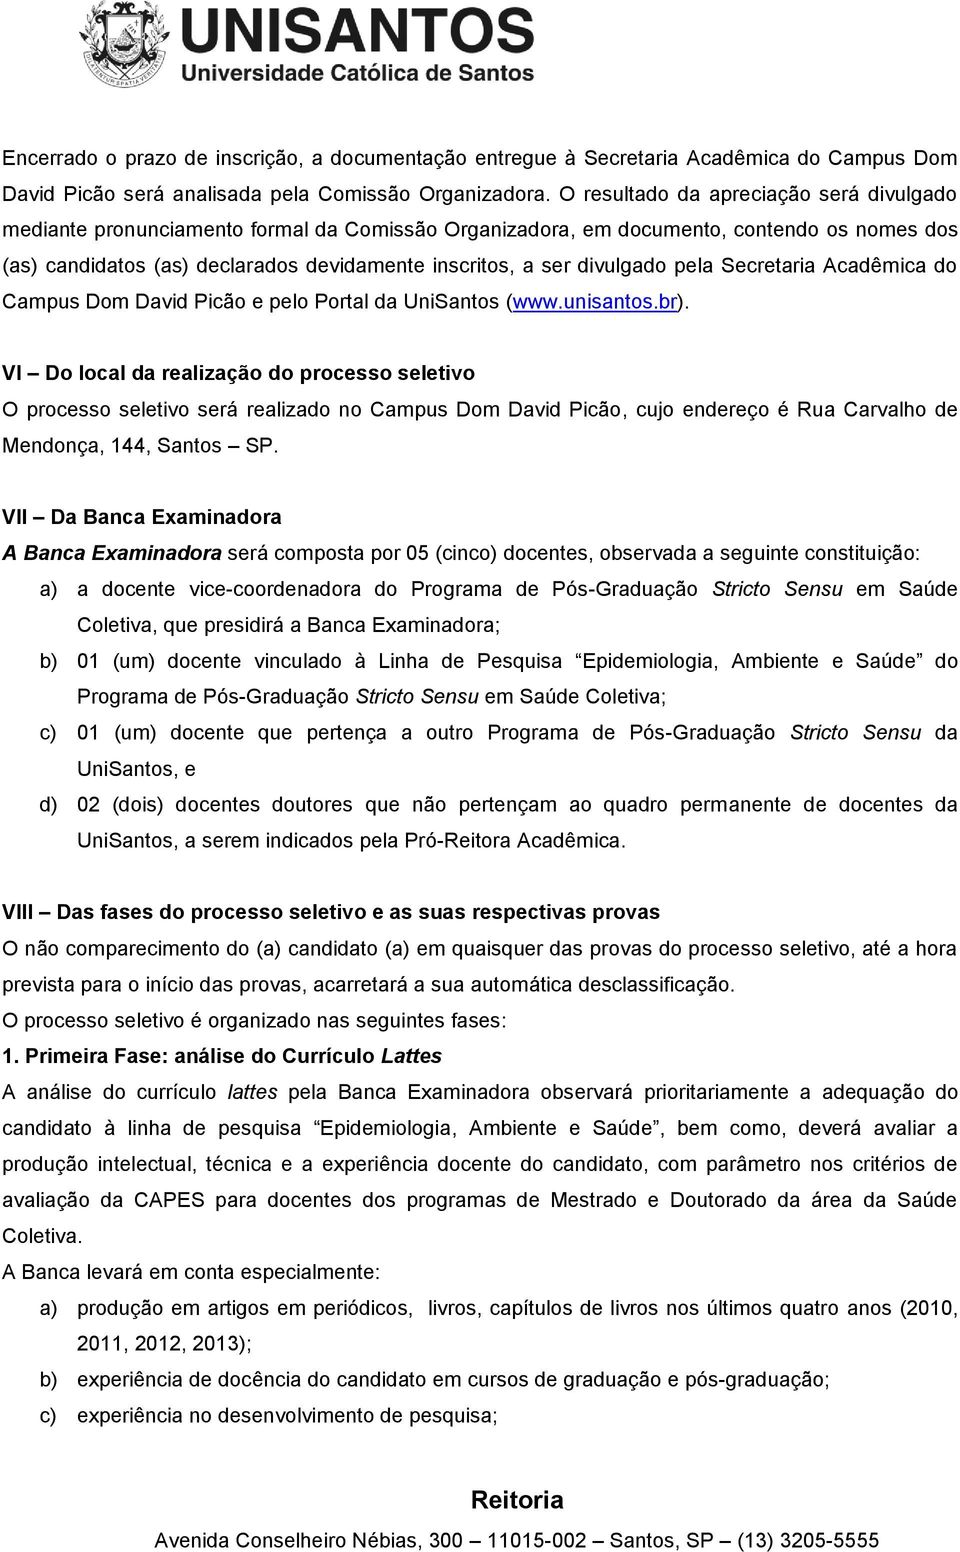 divulgado pela Secretaria Acadêmica do Campus Dom David Picão e pelo Portal da UniSantos (www.unisantos.br).